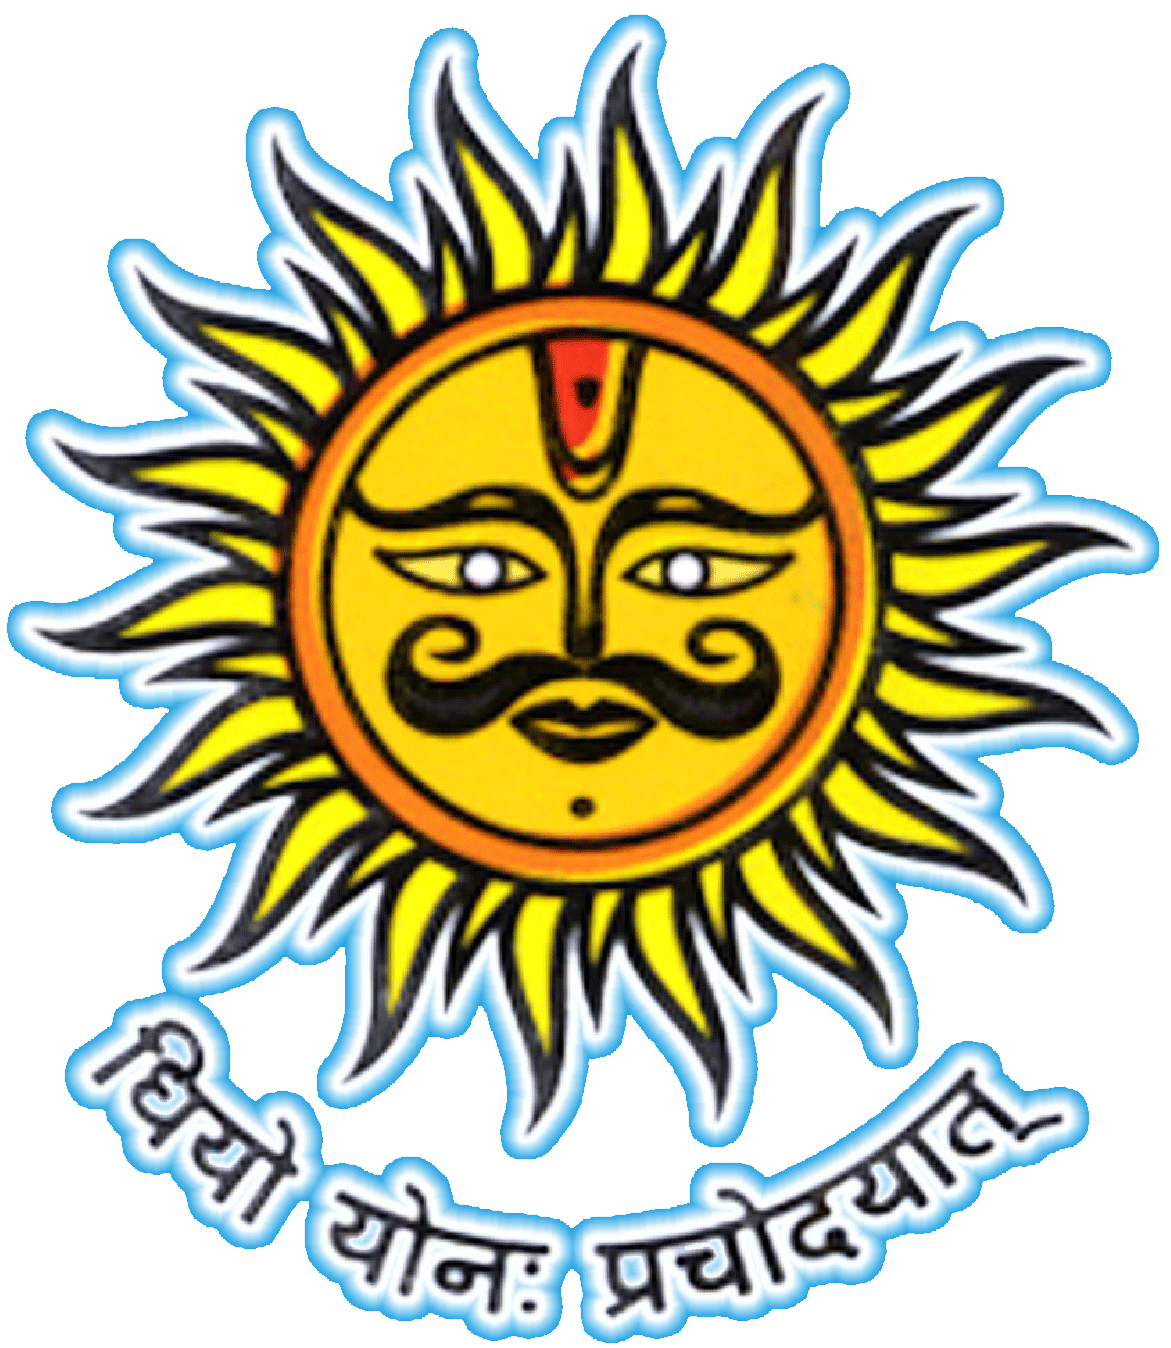 Nirmal Public School Logo